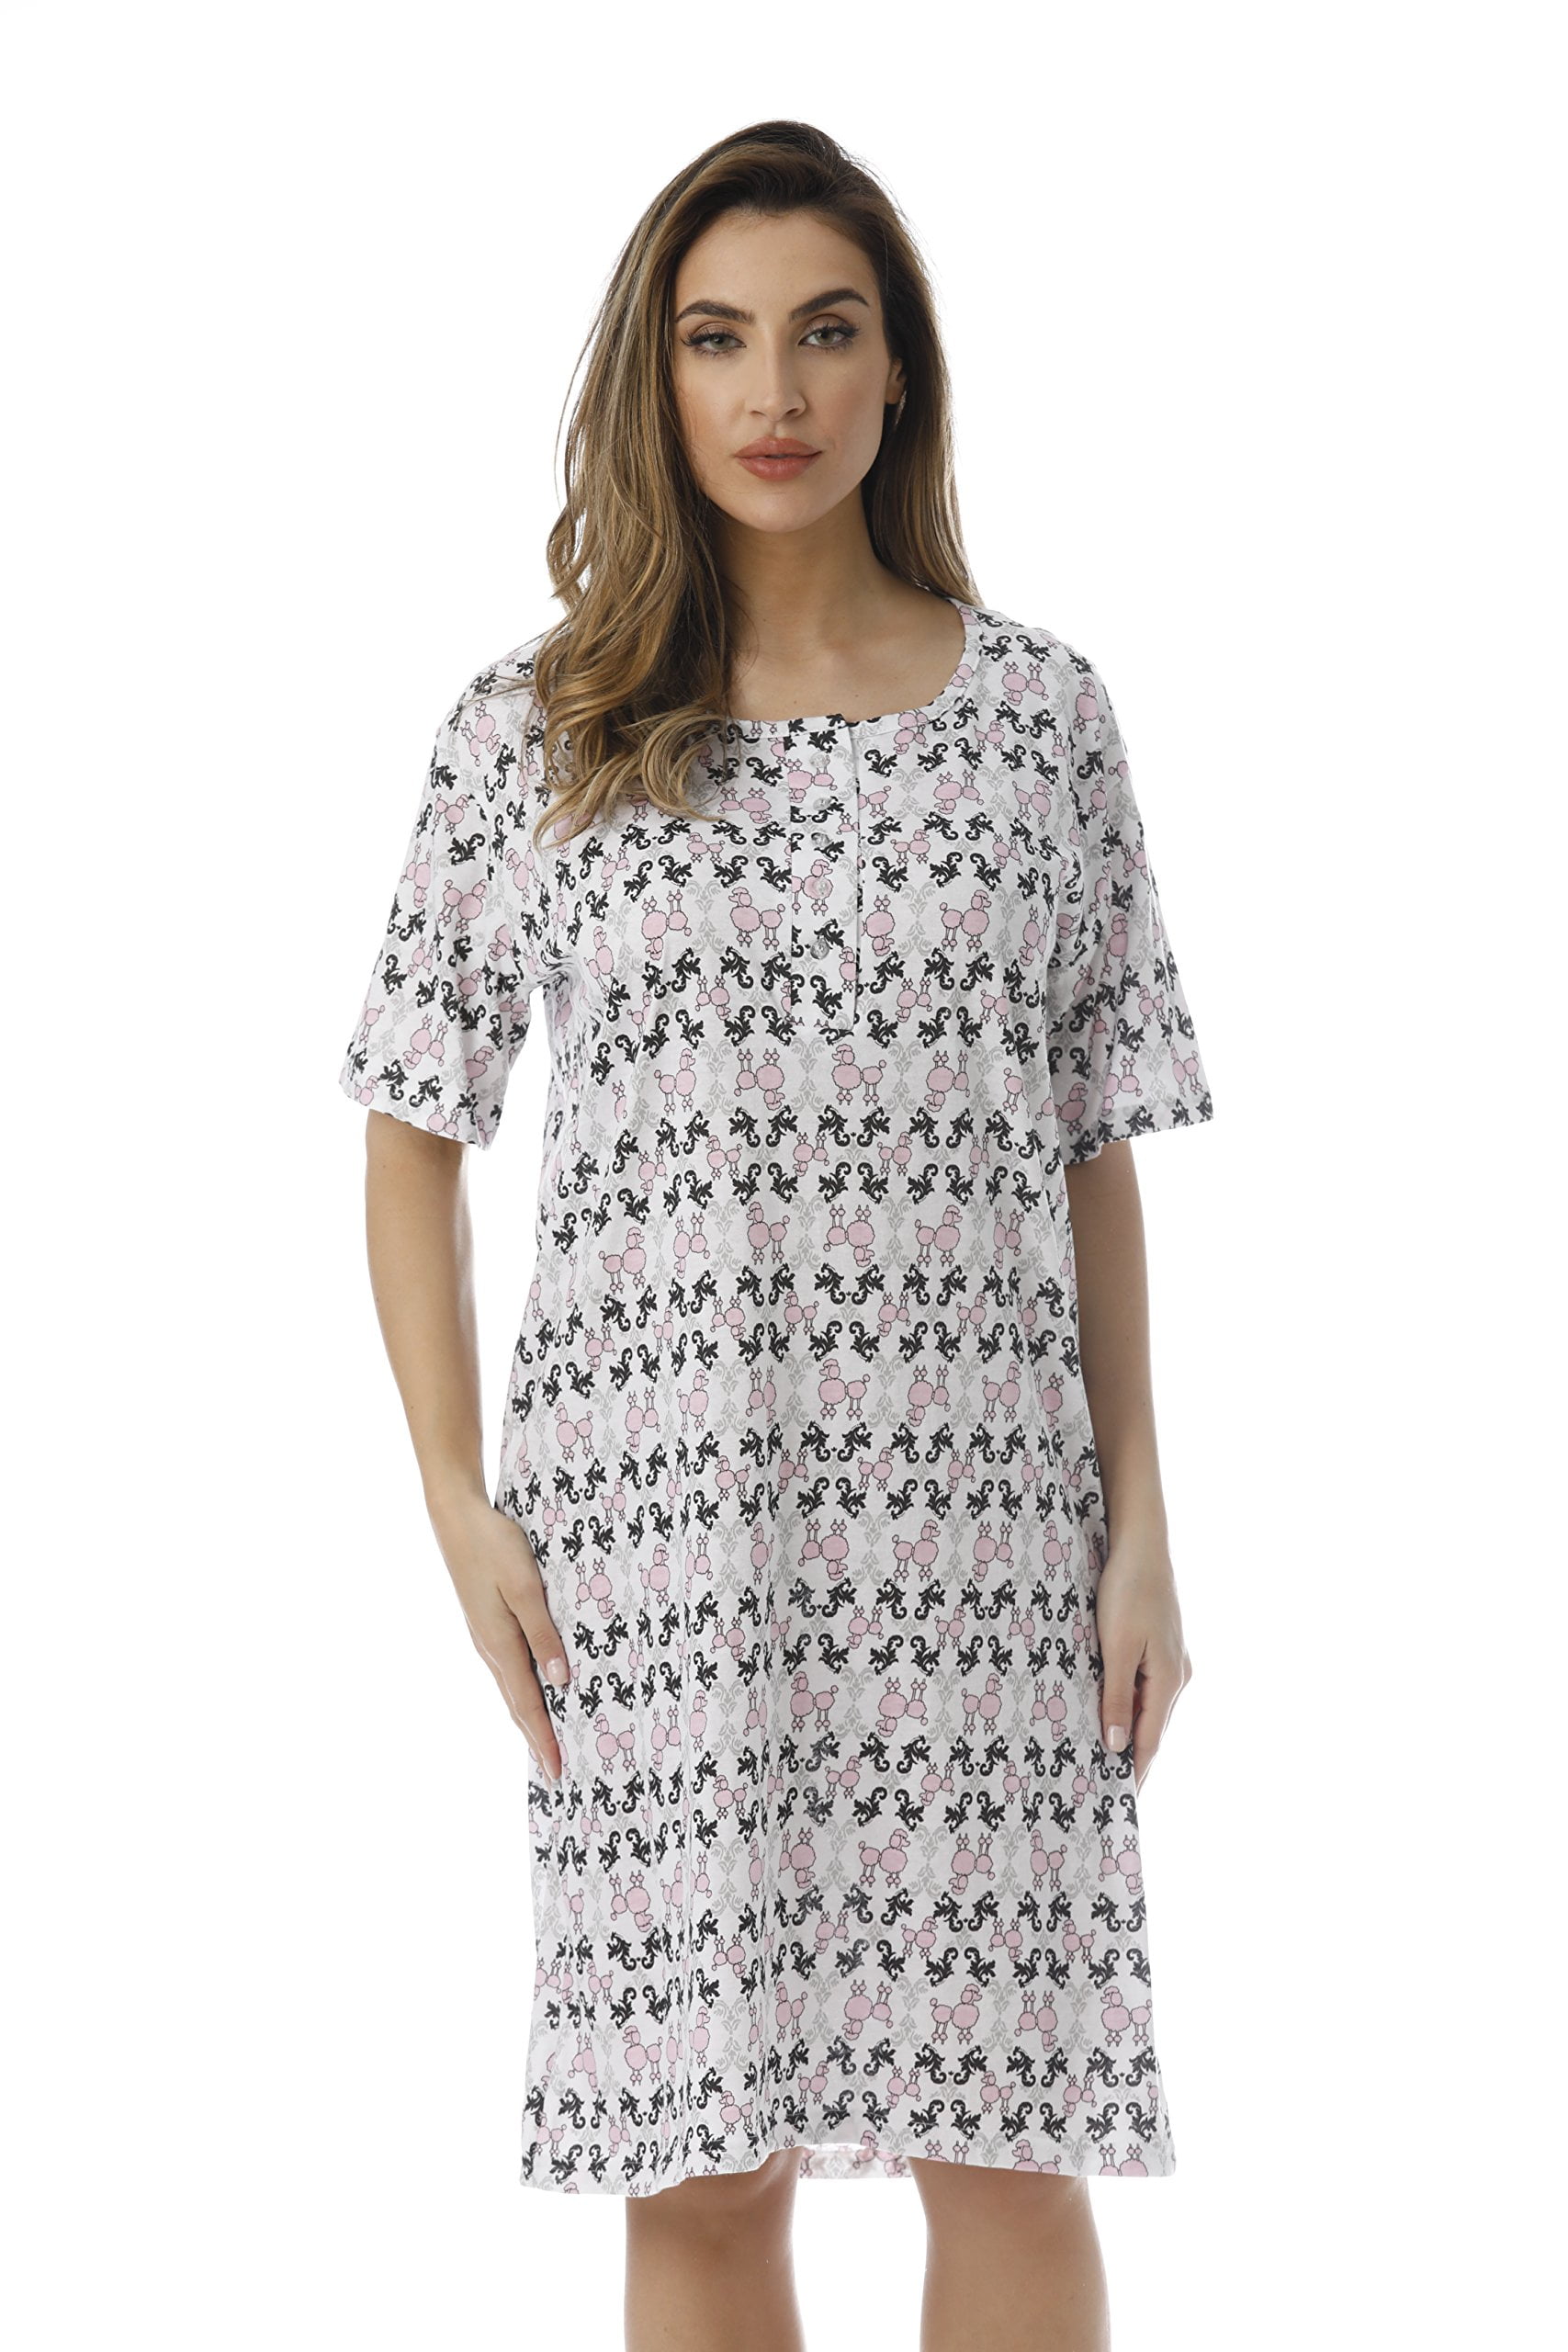 Just Love Short Sleeve Nightgown Sleep Dress for Women - Walmart.com